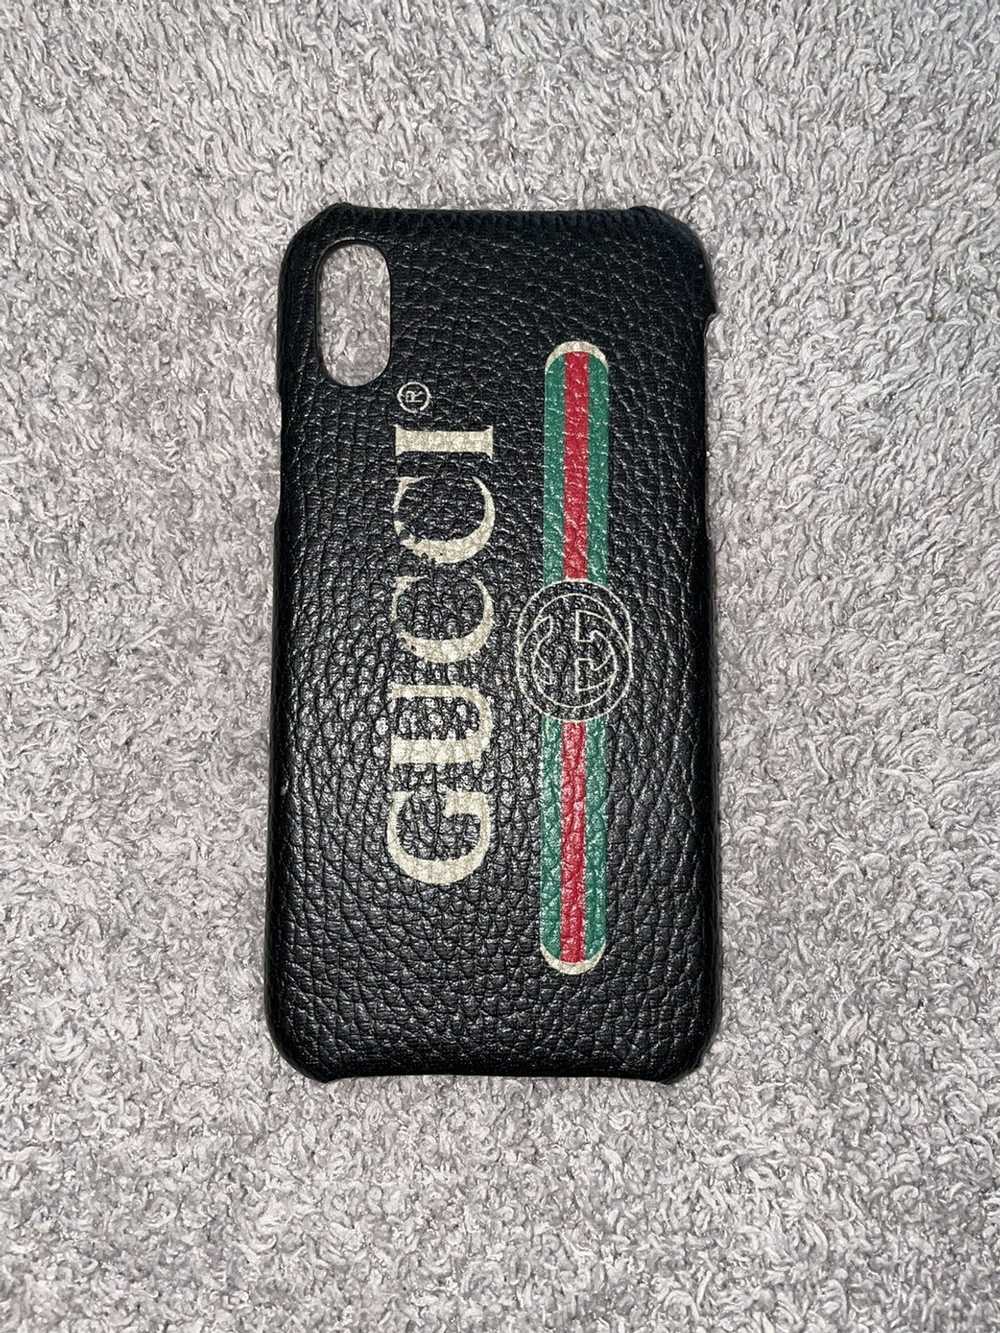 Gucci Logo iPhone X Case Release